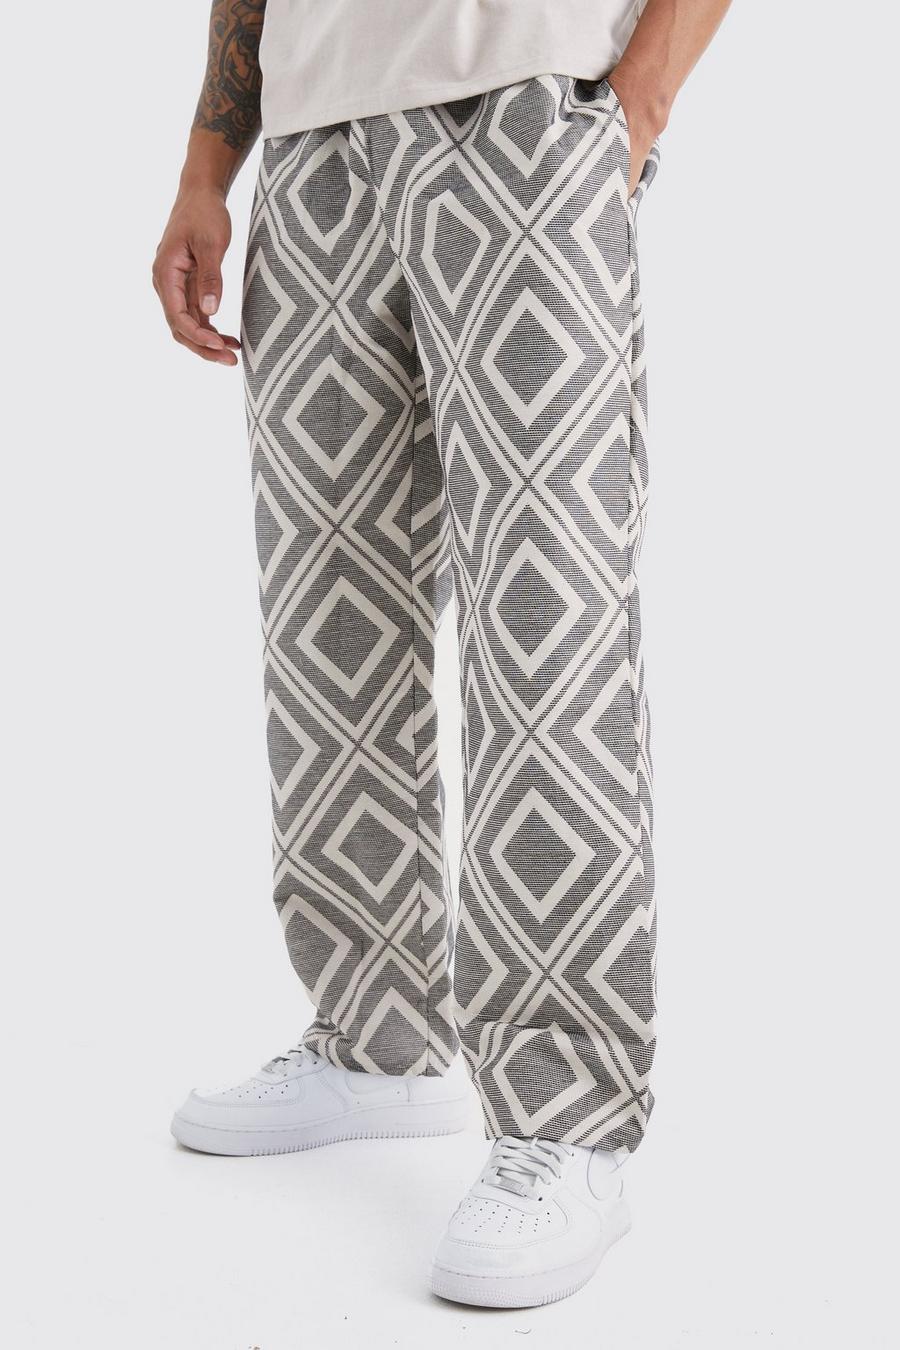 Lockere Jacquard-Hose mit elastischem Bund, Grey